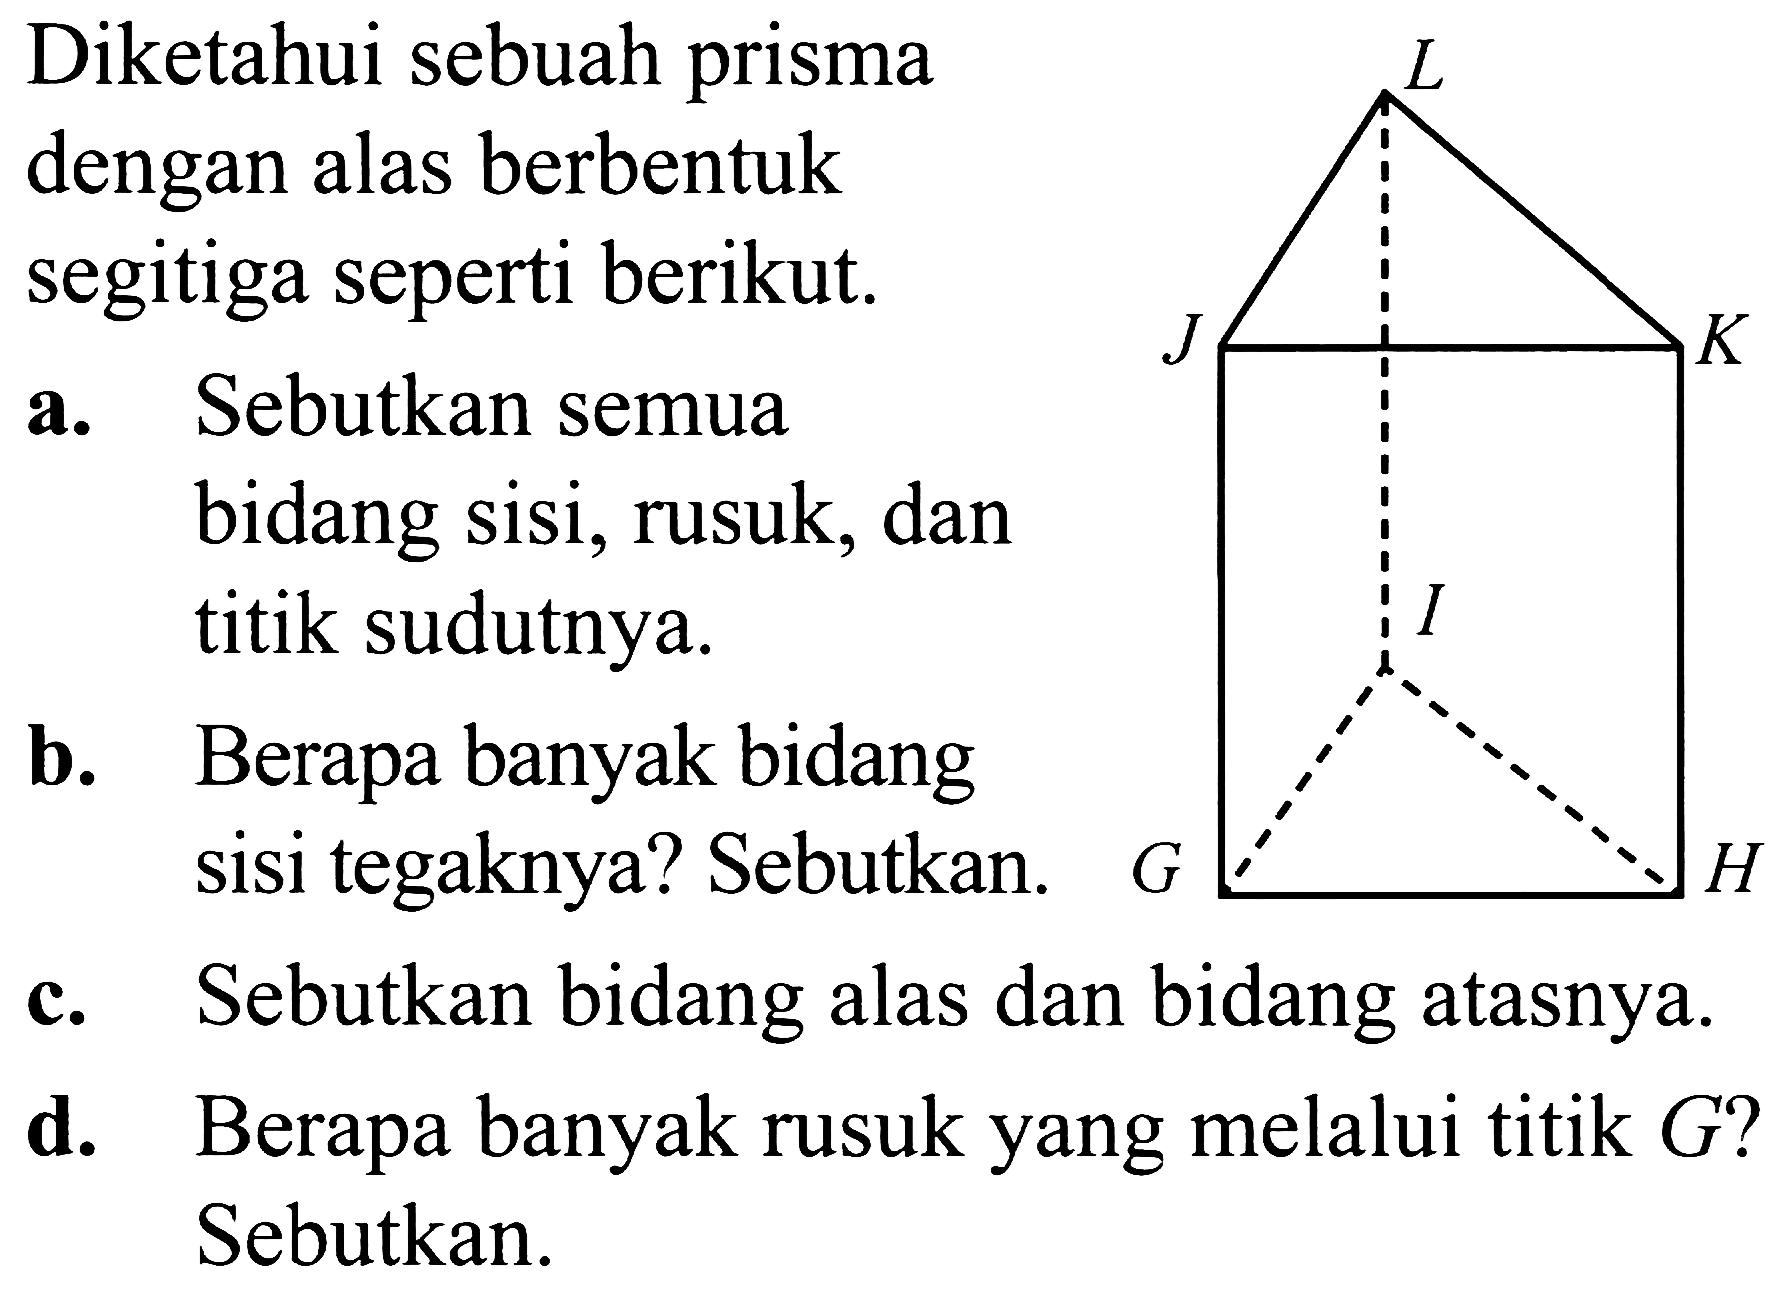 Diketahui sebuah prisma dengan alas berbentuk segitiga seperti berikut.
a. Sebutkan semua bidang sisi, rusuk, dan titik sudutnya.
b. Berapa banyak bidang sisi tegaknya? Sebutkan.
c. Sebutkan bidang alas dan bidang atasnya.
d. Berapa banyak rusuk yang melalui titik  G  ? Sebutkan.